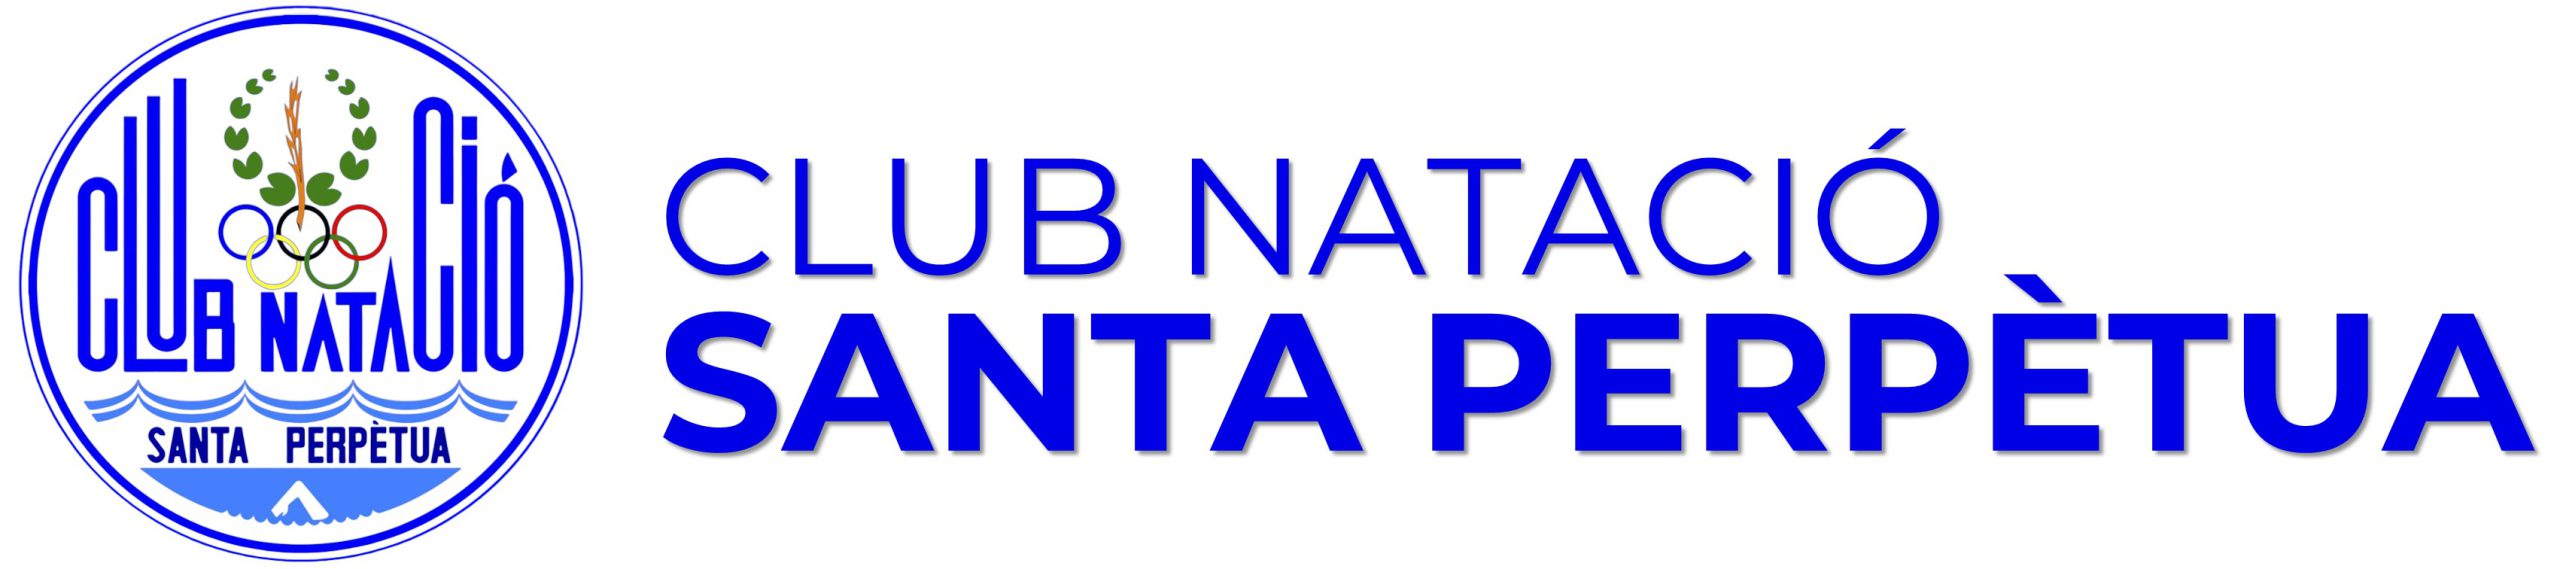 Club Natació Santa Perpètua